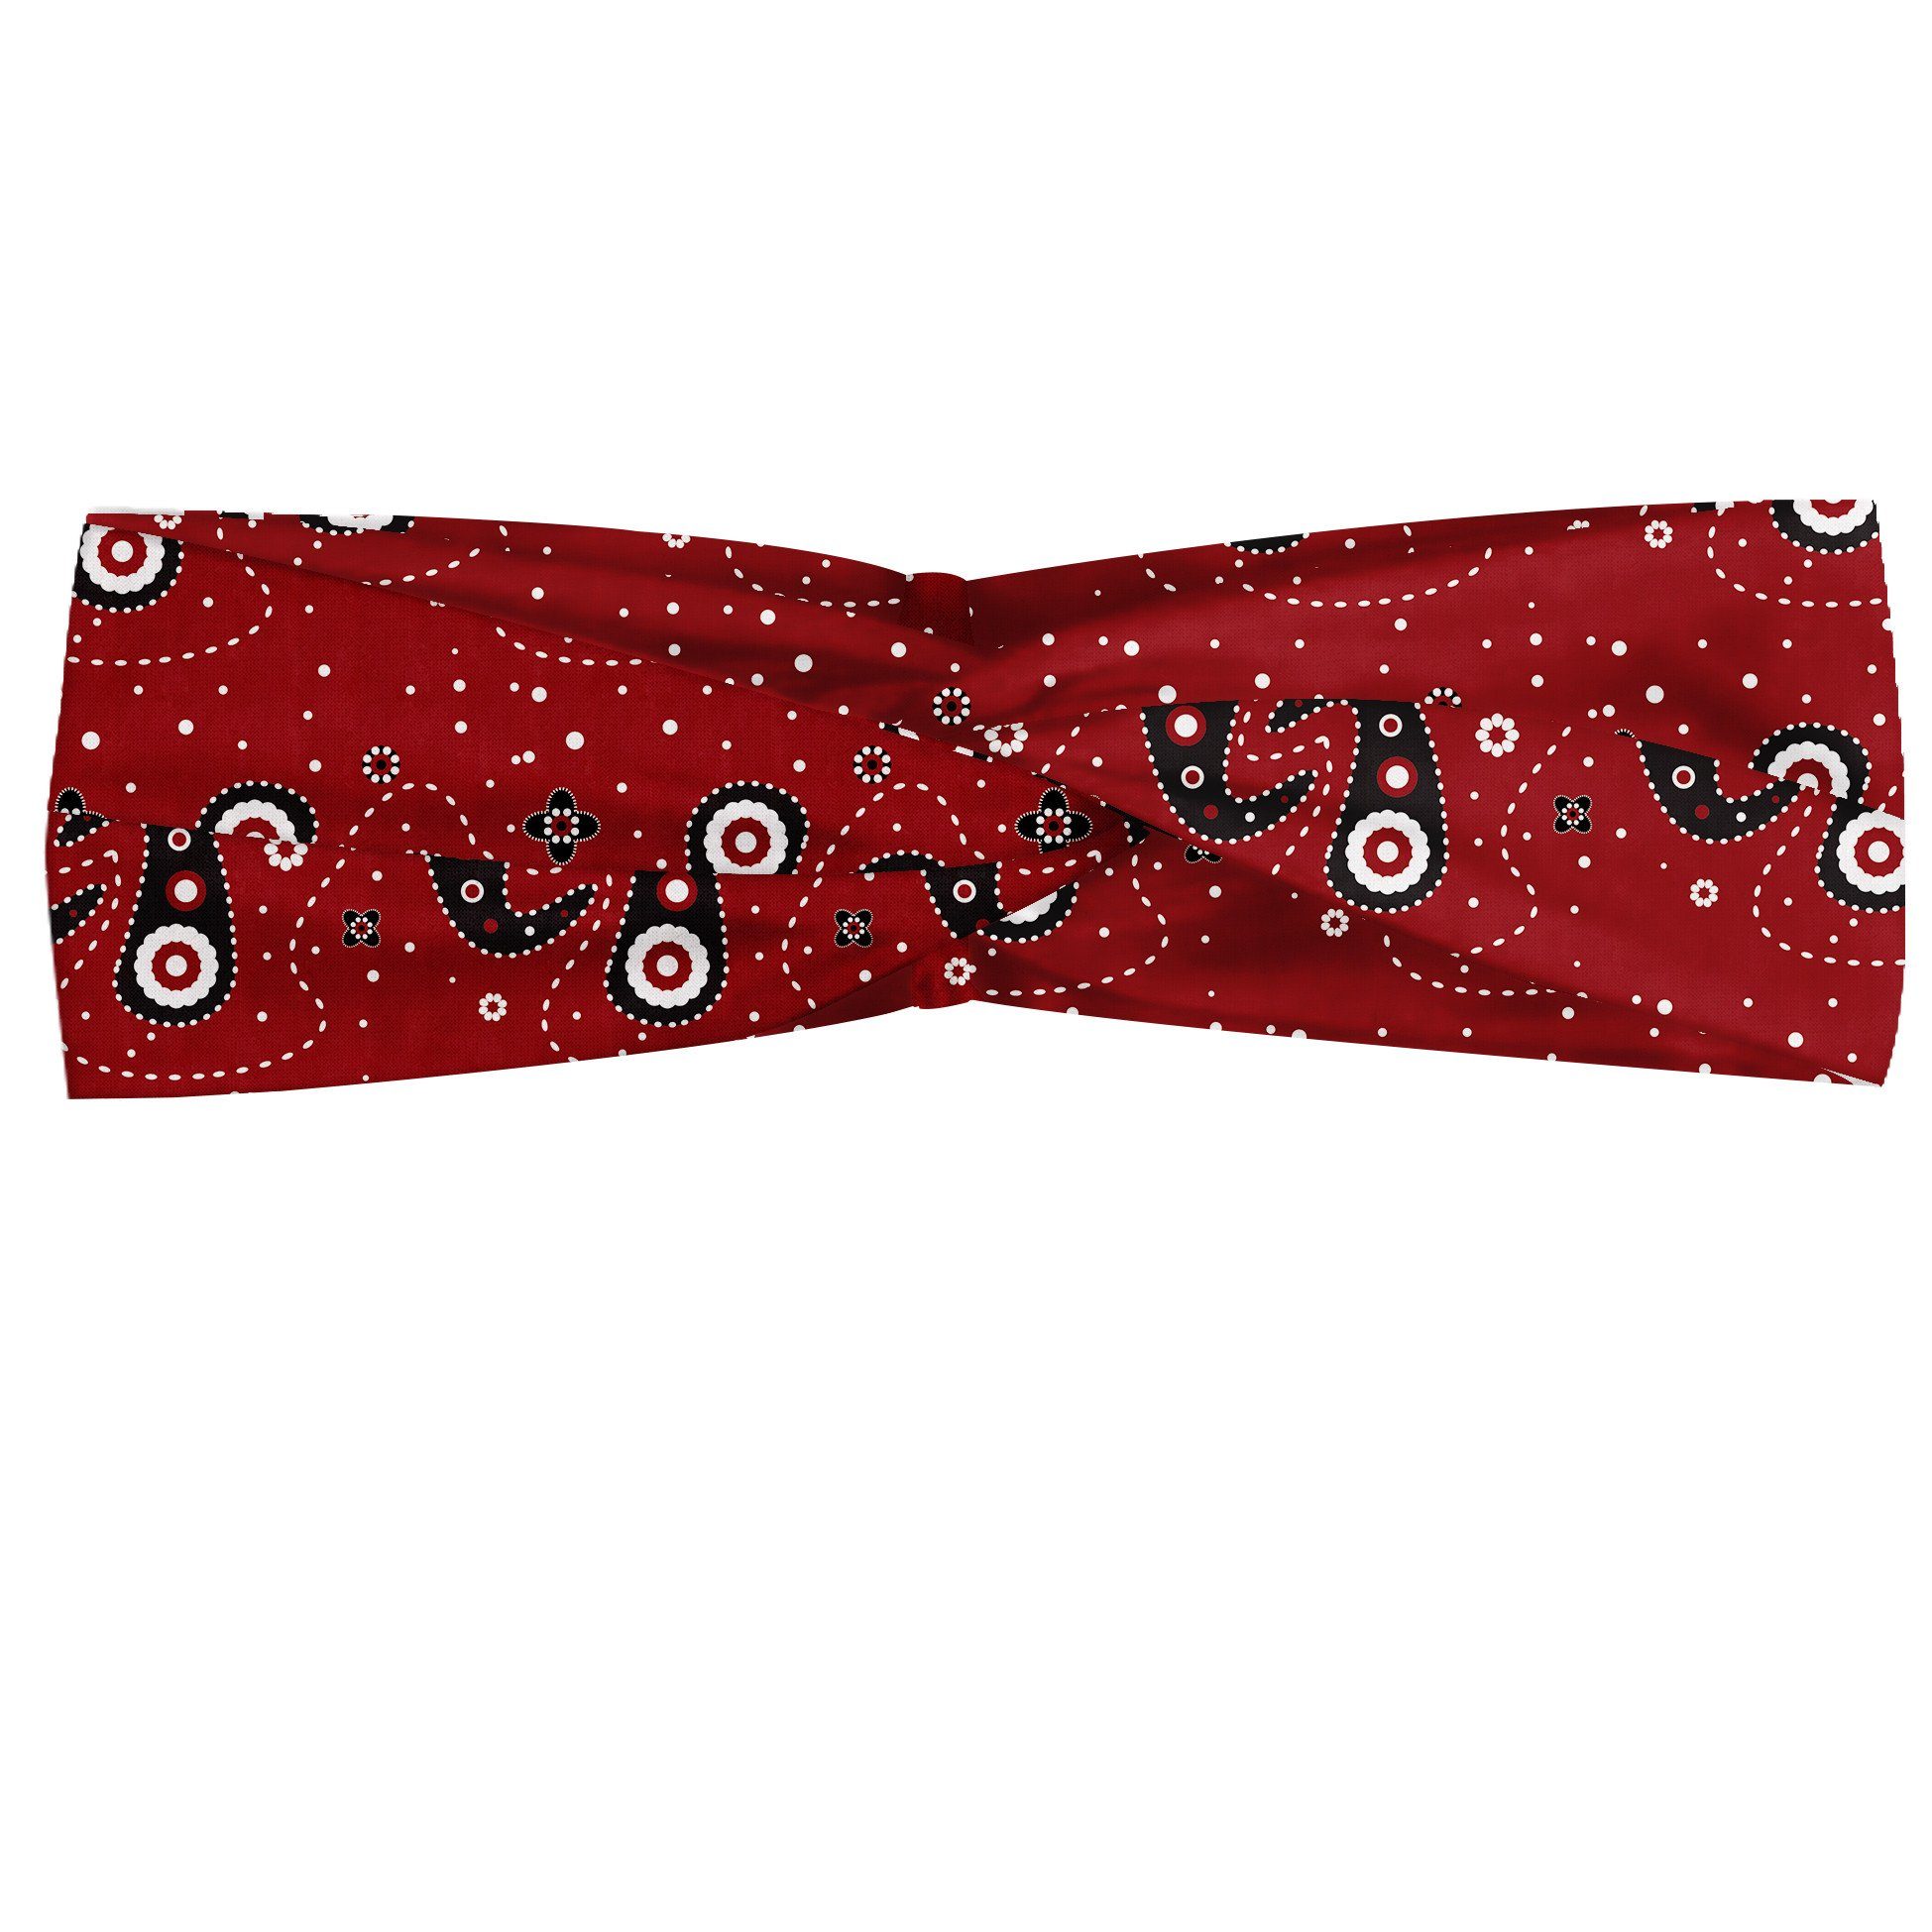 Abakuhaus Stirnband Elastisch und Angenehme alltags accessories rot schwarz Paisley Blumen-Punkte